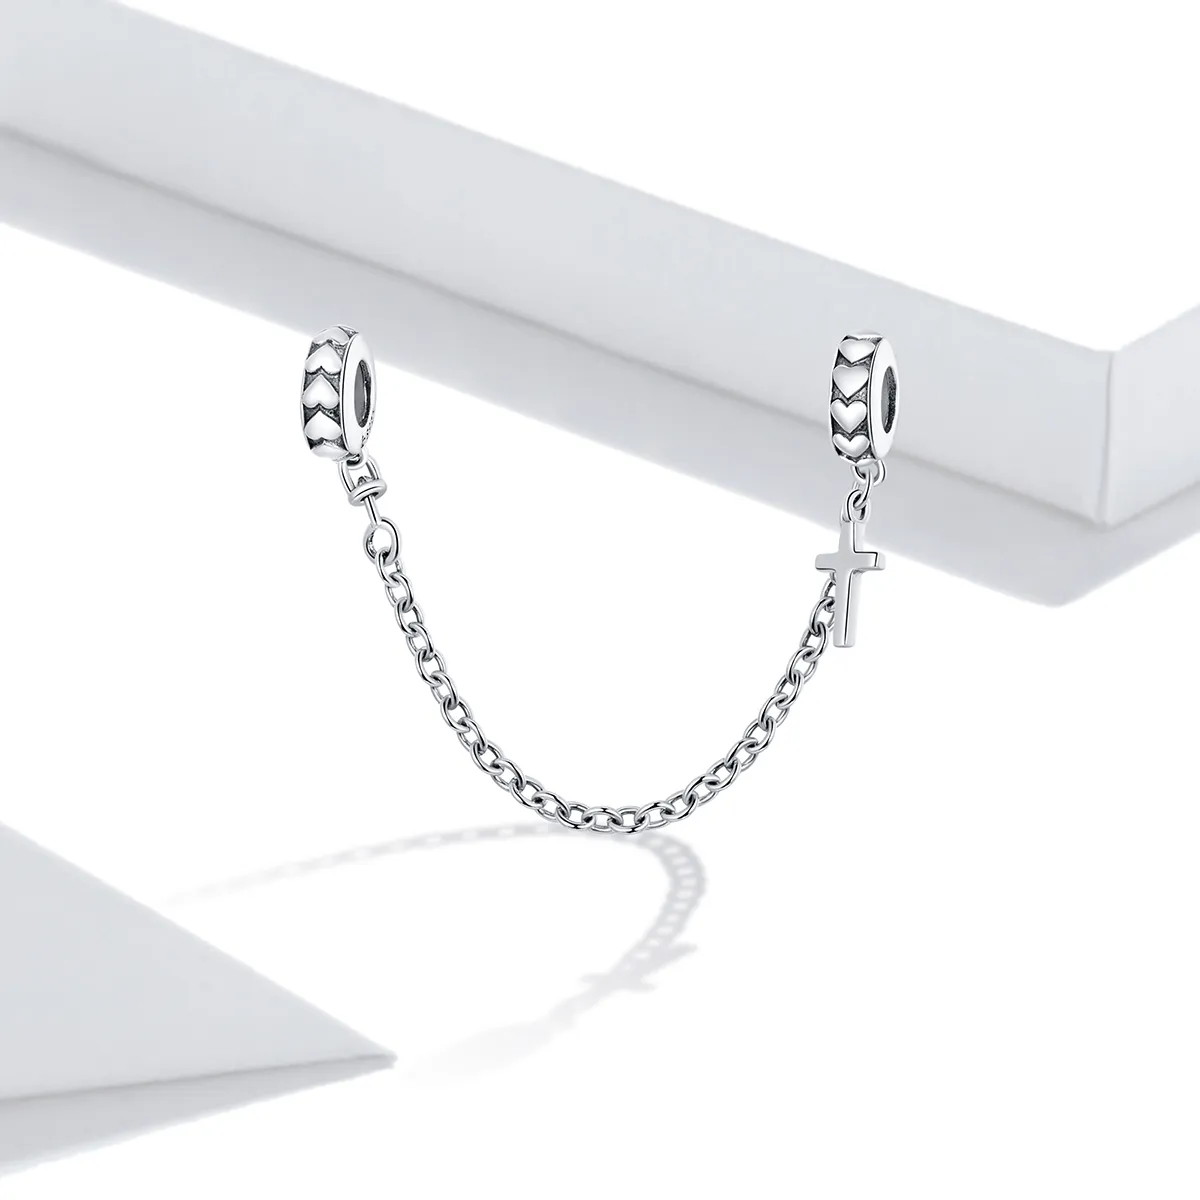 Lanț de siguranță Tip Pandora cu Crucea simplă din argint - BSC362